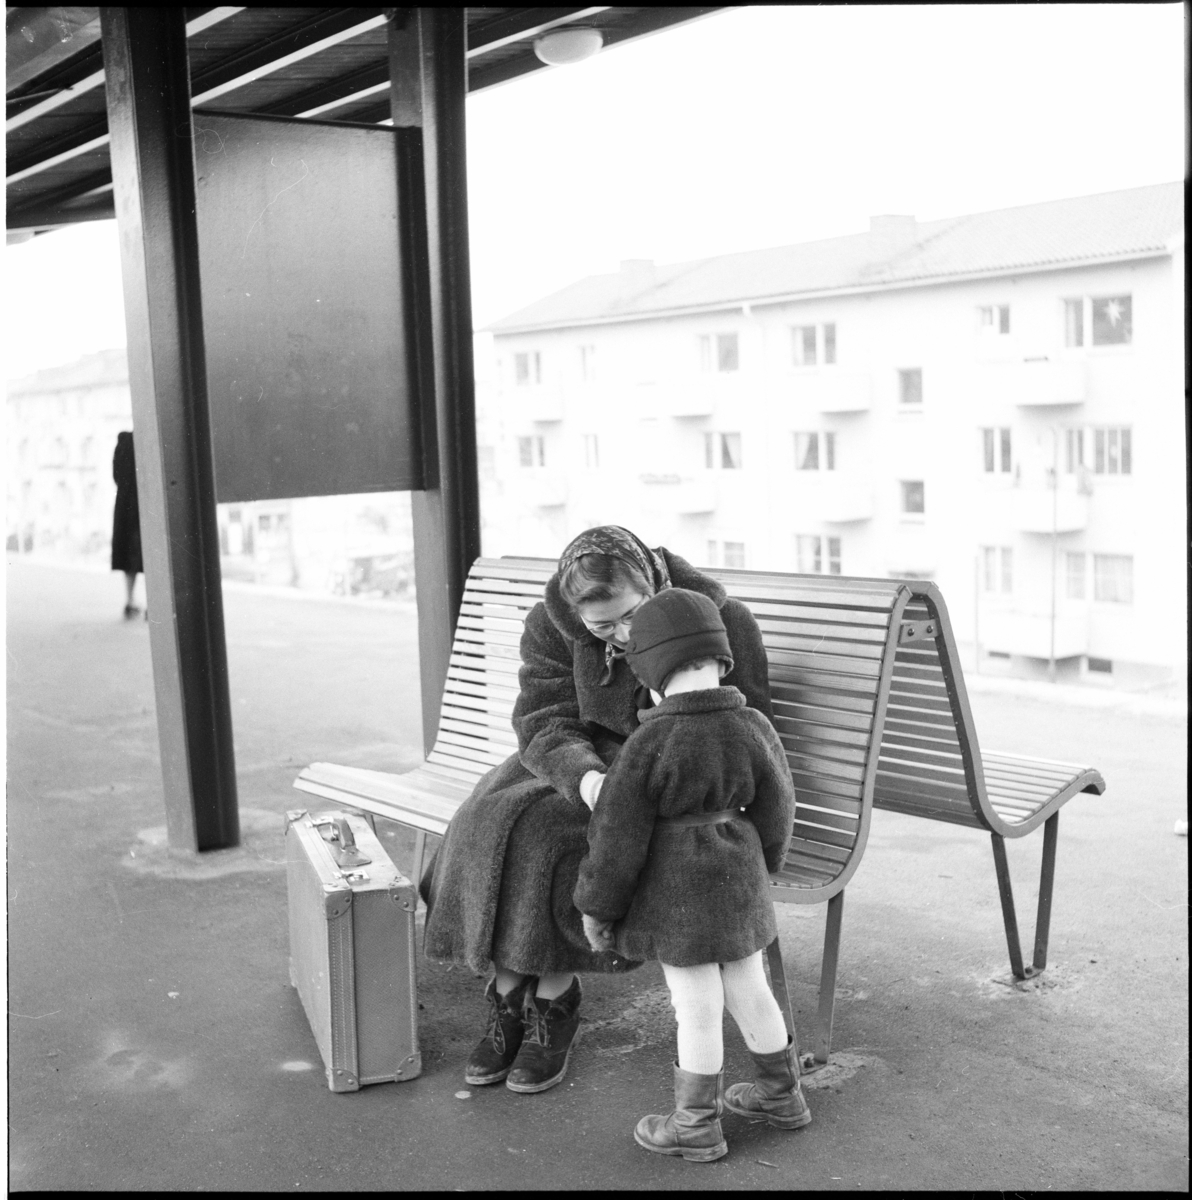 Västra tunnelbanan, Abrahamsbergs tunnelbanestation.
Tunnelbanebänk med kvinna och barn.